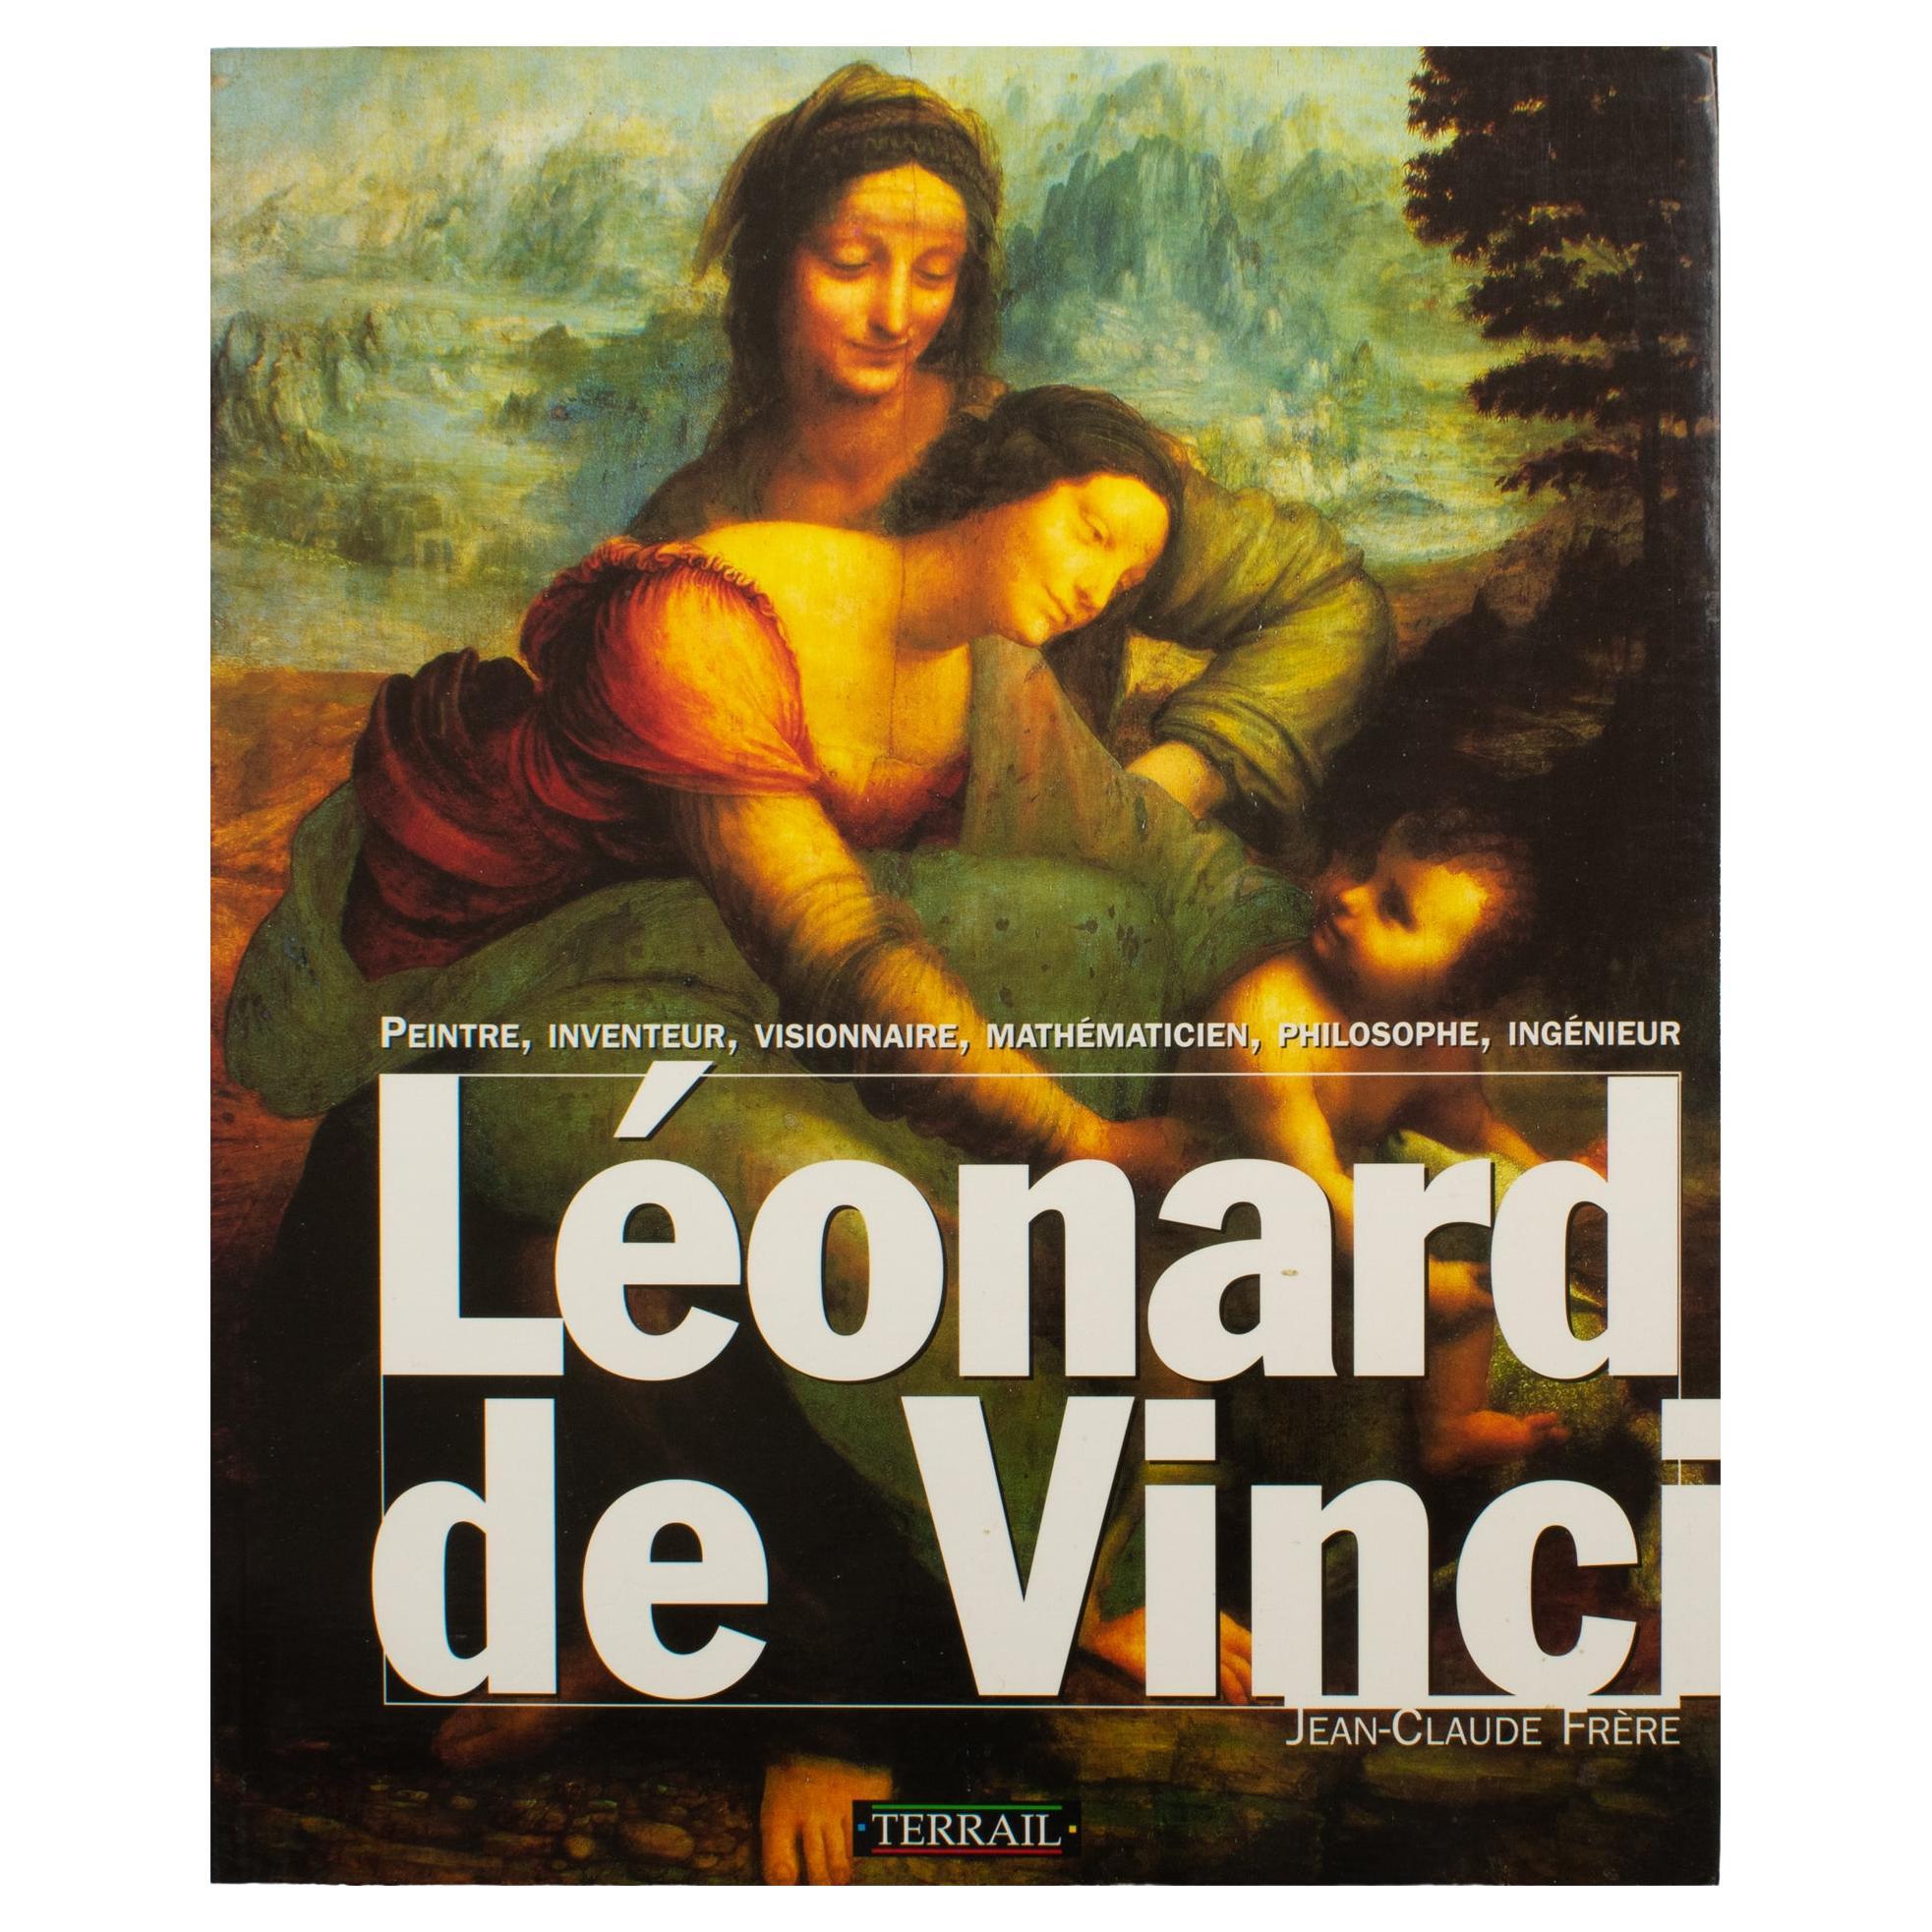 Leonardo Da Vinci, Französisches Buch von Jean-Claude Frere, 1994